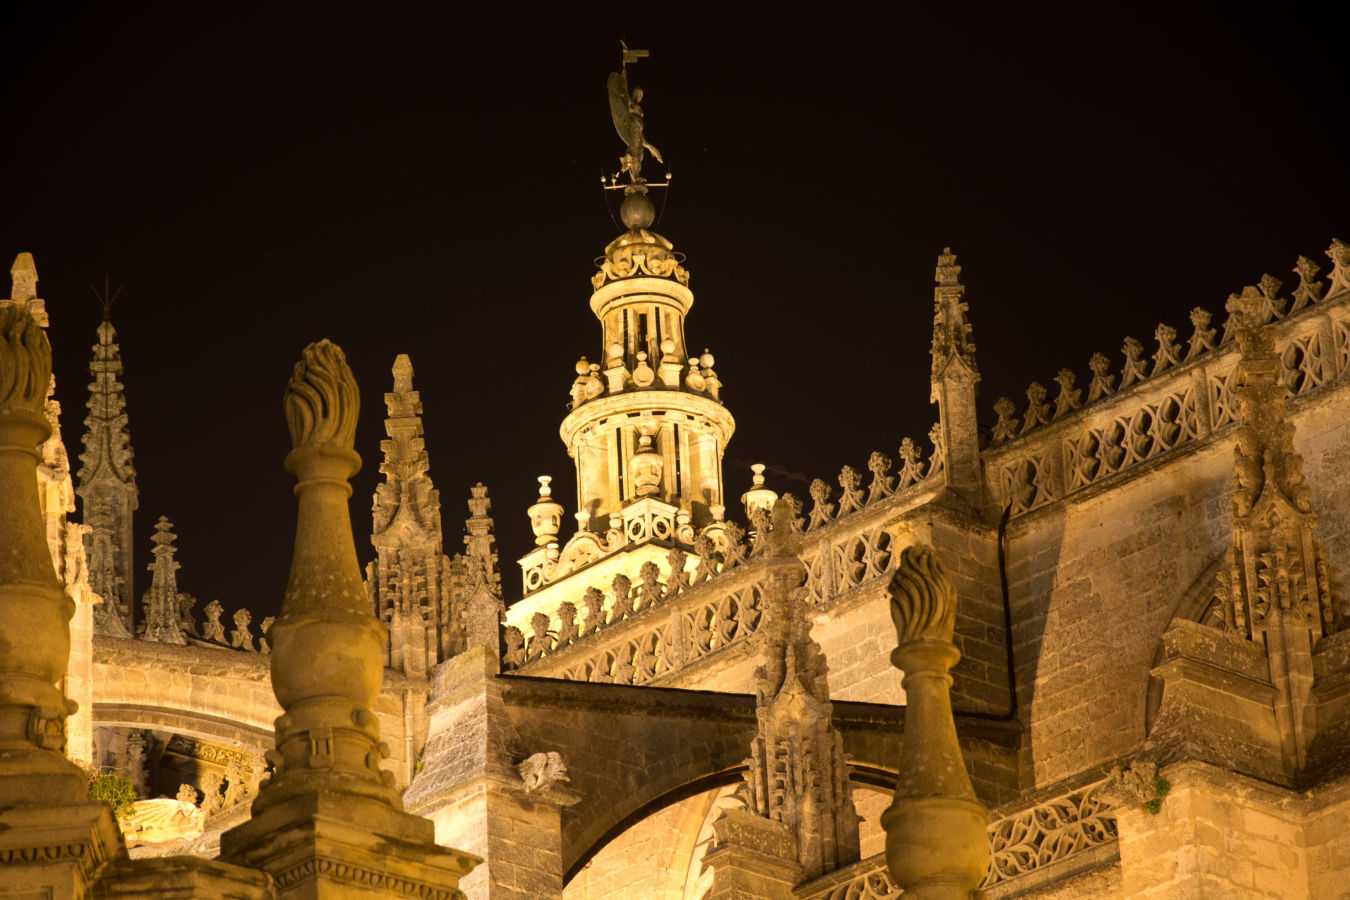 Catedral de Sevilla - Web Oficial // Seville Cathedral - Official Website|Catedral de Sevilla - Web Oficial // Seville Cathedral - Official Website